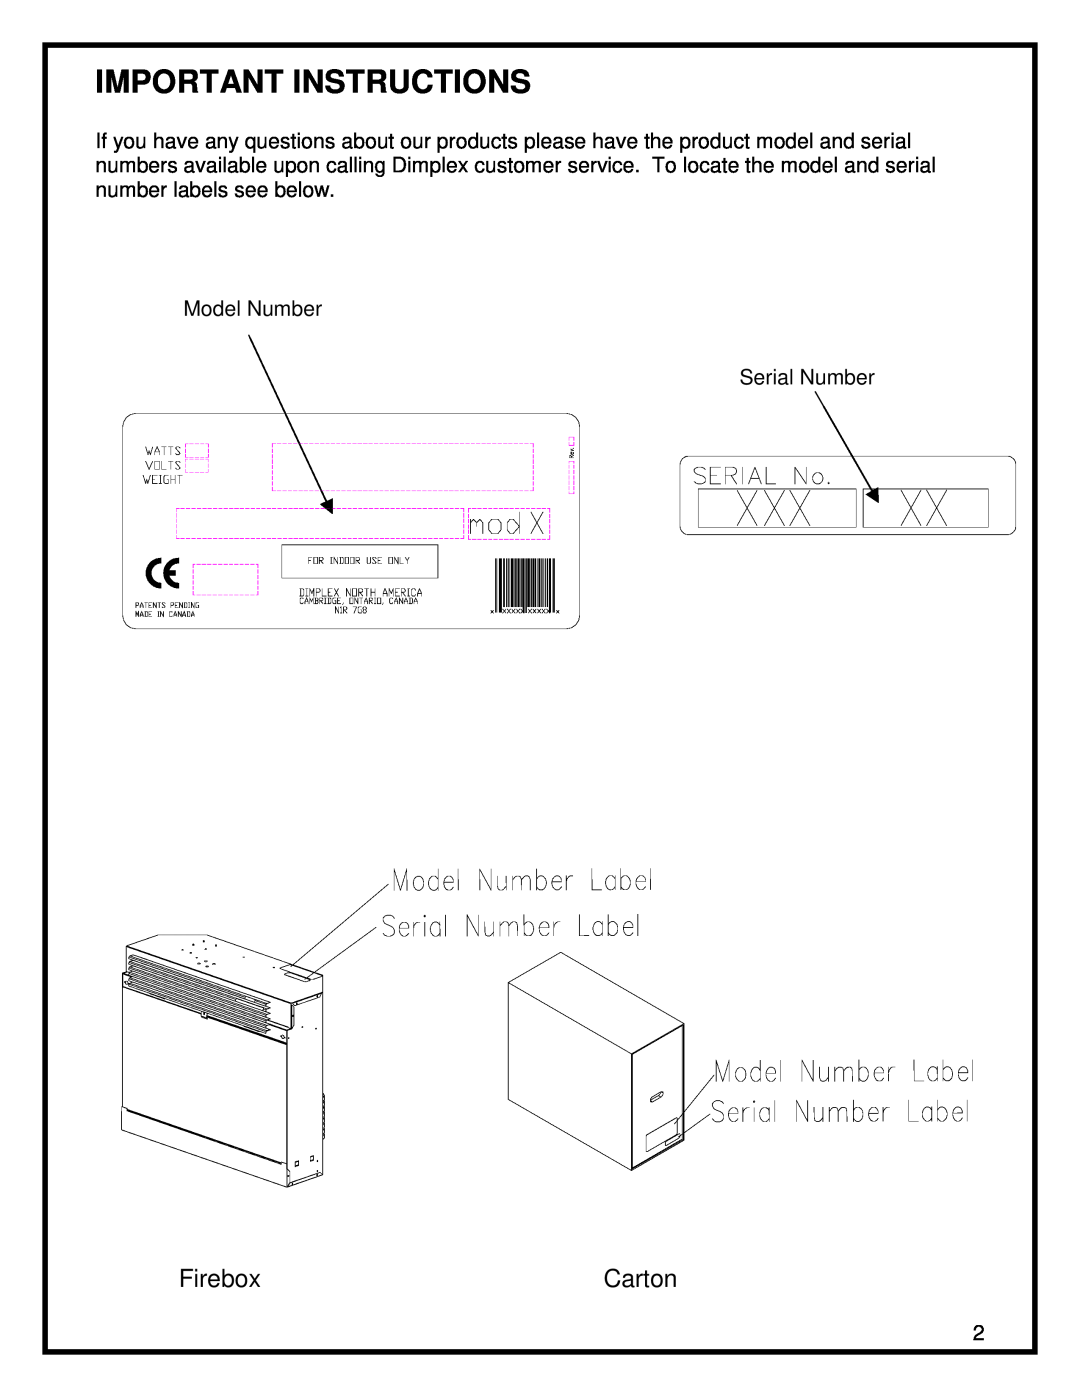 Dimplex EF3003-230 manual Important Instructions, Firebox, Carton 